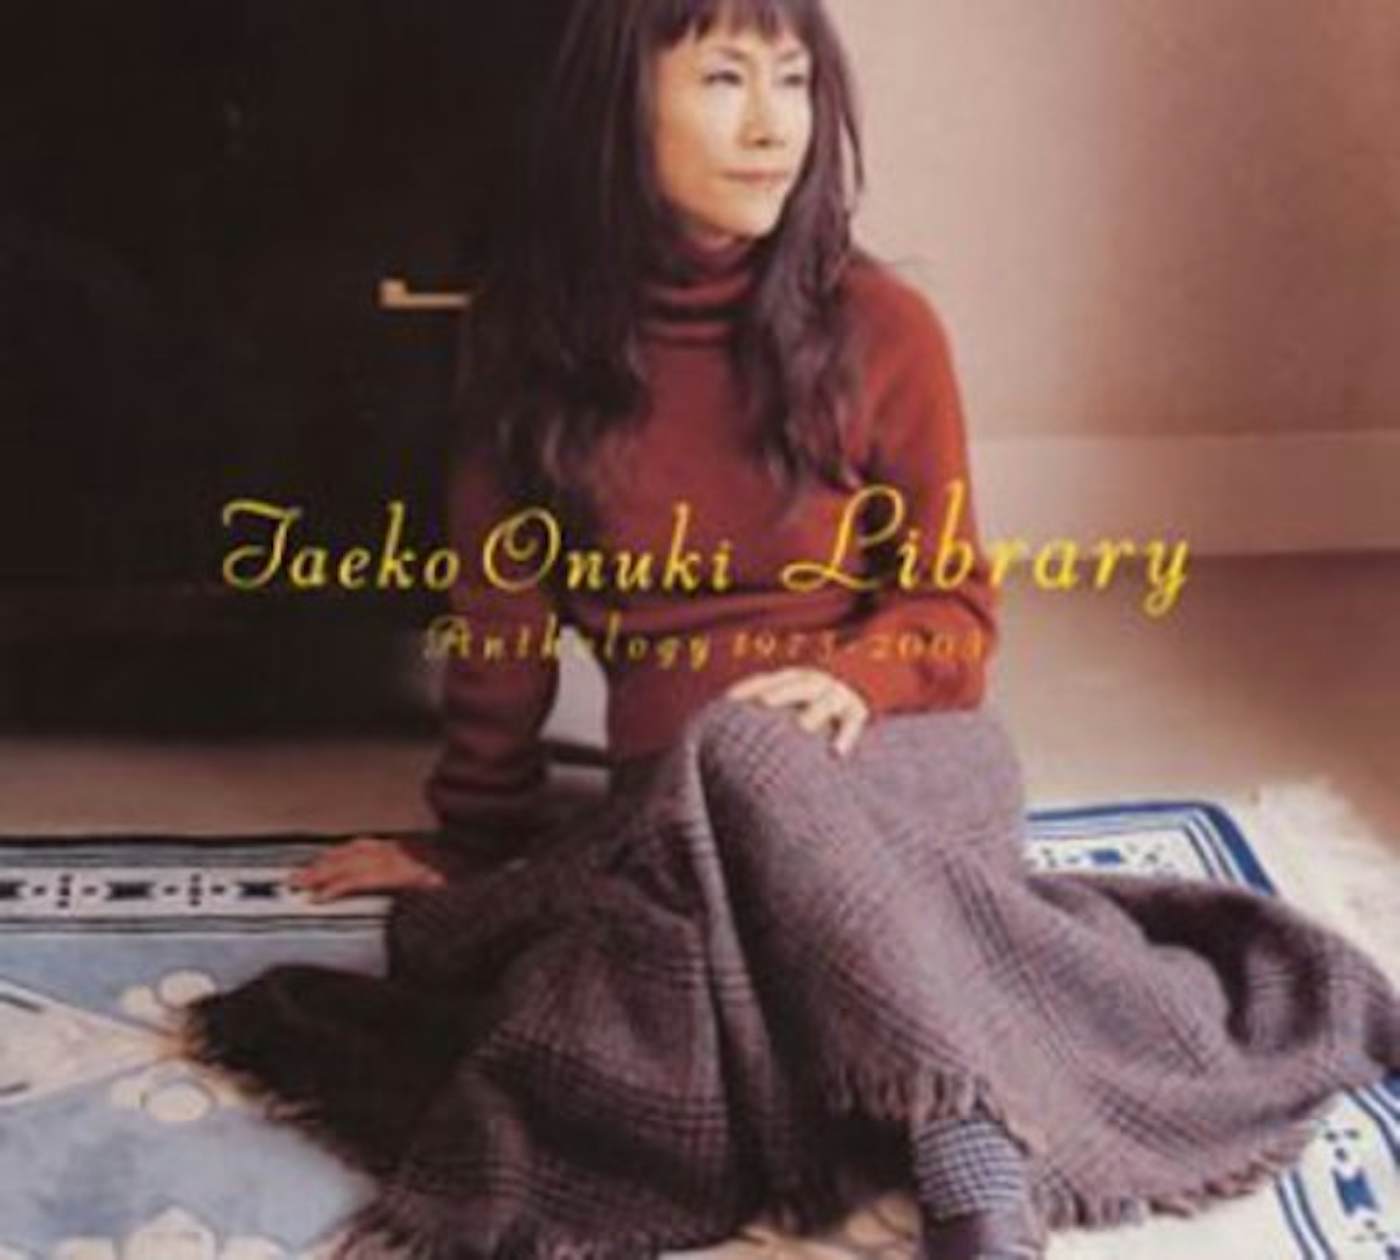 Taeko Ohnuki Cliche Download Album - Colaboratory